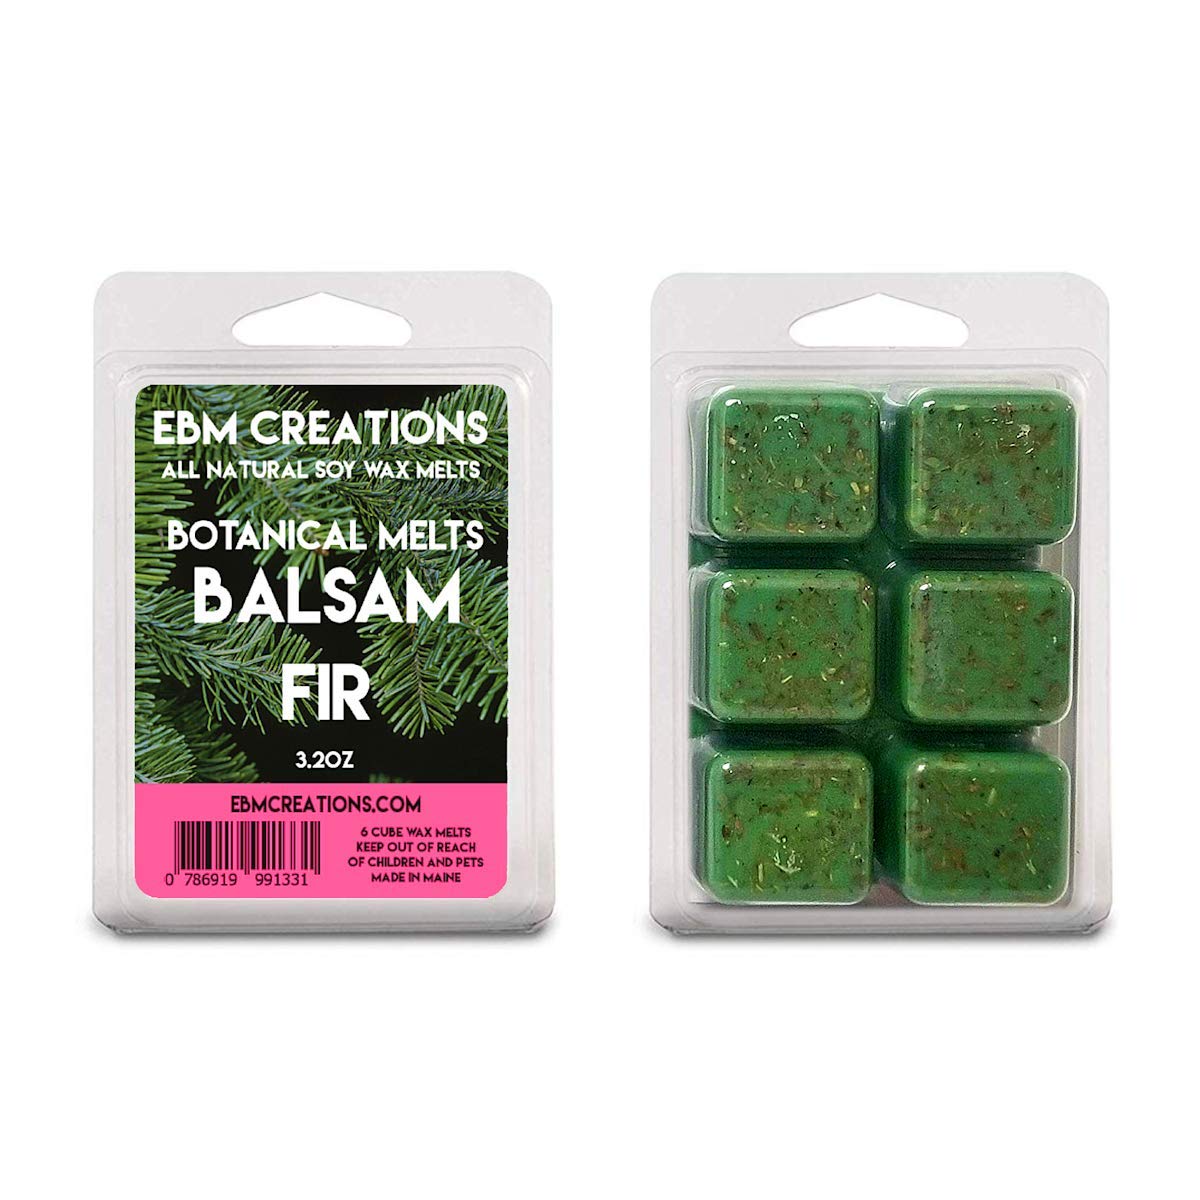 Balsam Fir Botanical Melts - Fresh Maine Balsam Inside! - 3.2 oz Clamshell